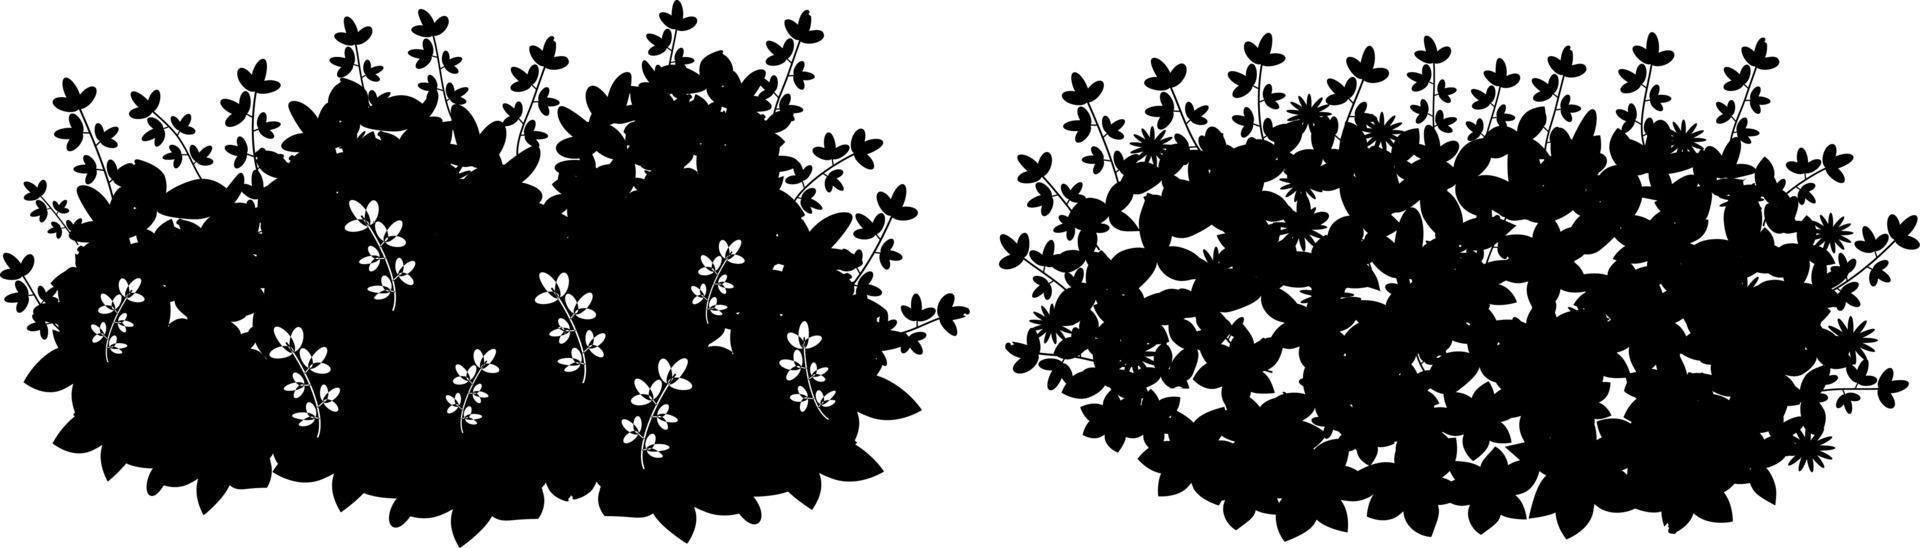 dibujo vectorial monocromo de arbustos. vector